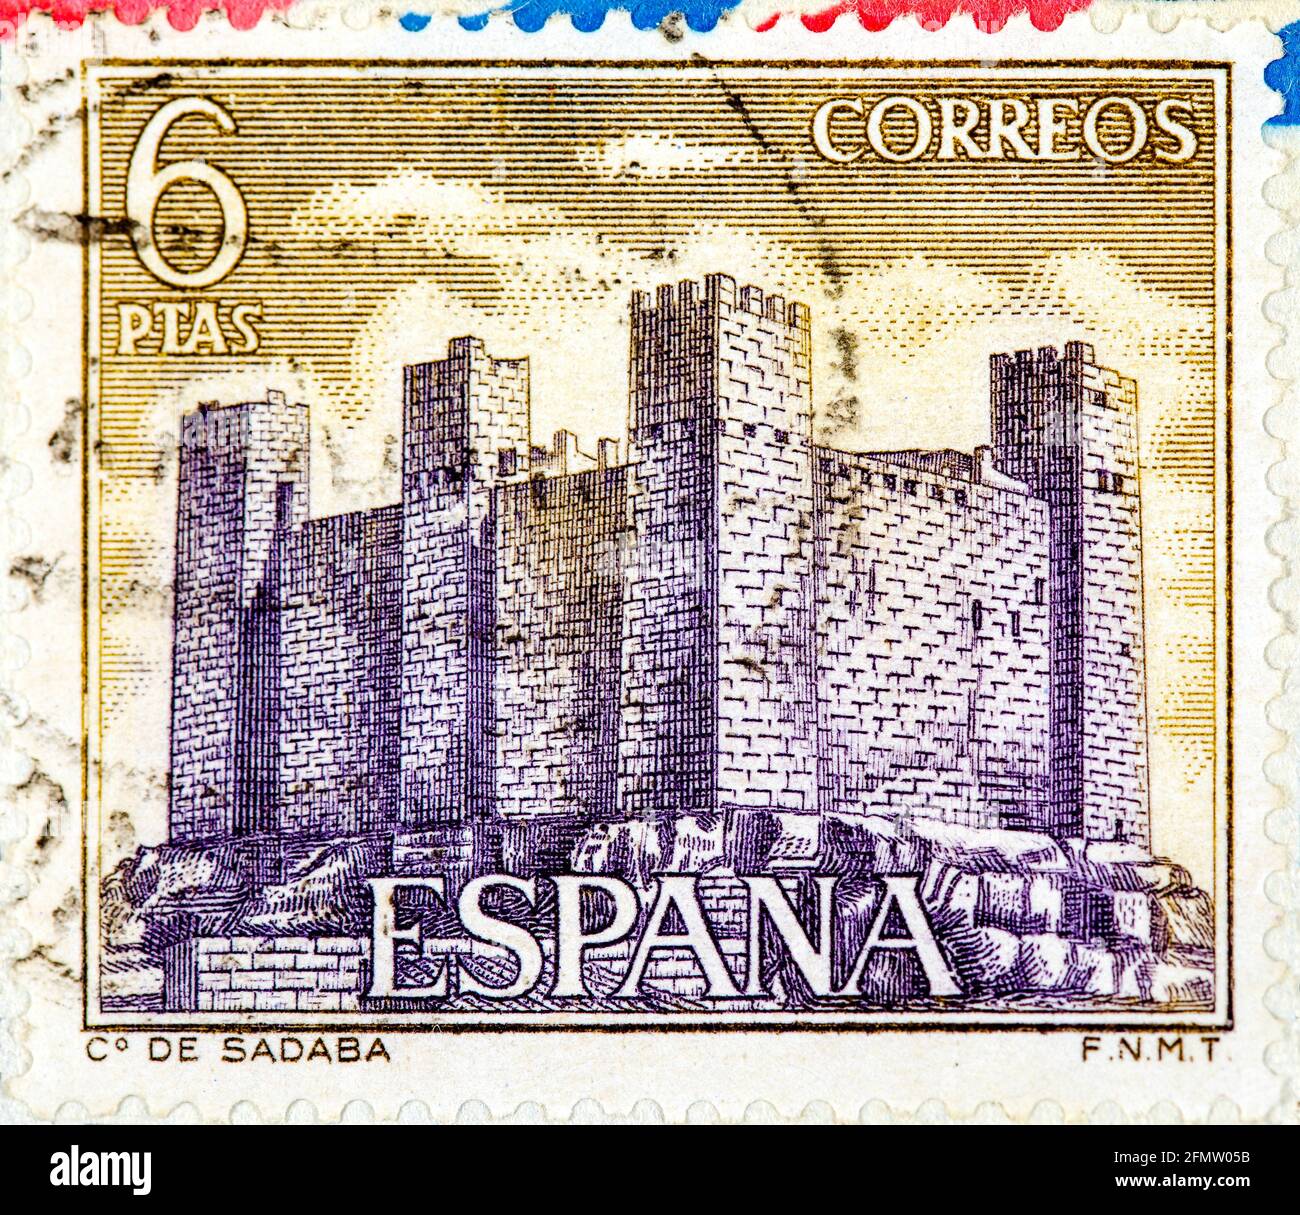 ESPAGNE - VERS 1970 : un timbre imprimé en Espagne montre le château de Sadaba, Aragon, château du Moyen âge, vers 1970 Banque D'Images